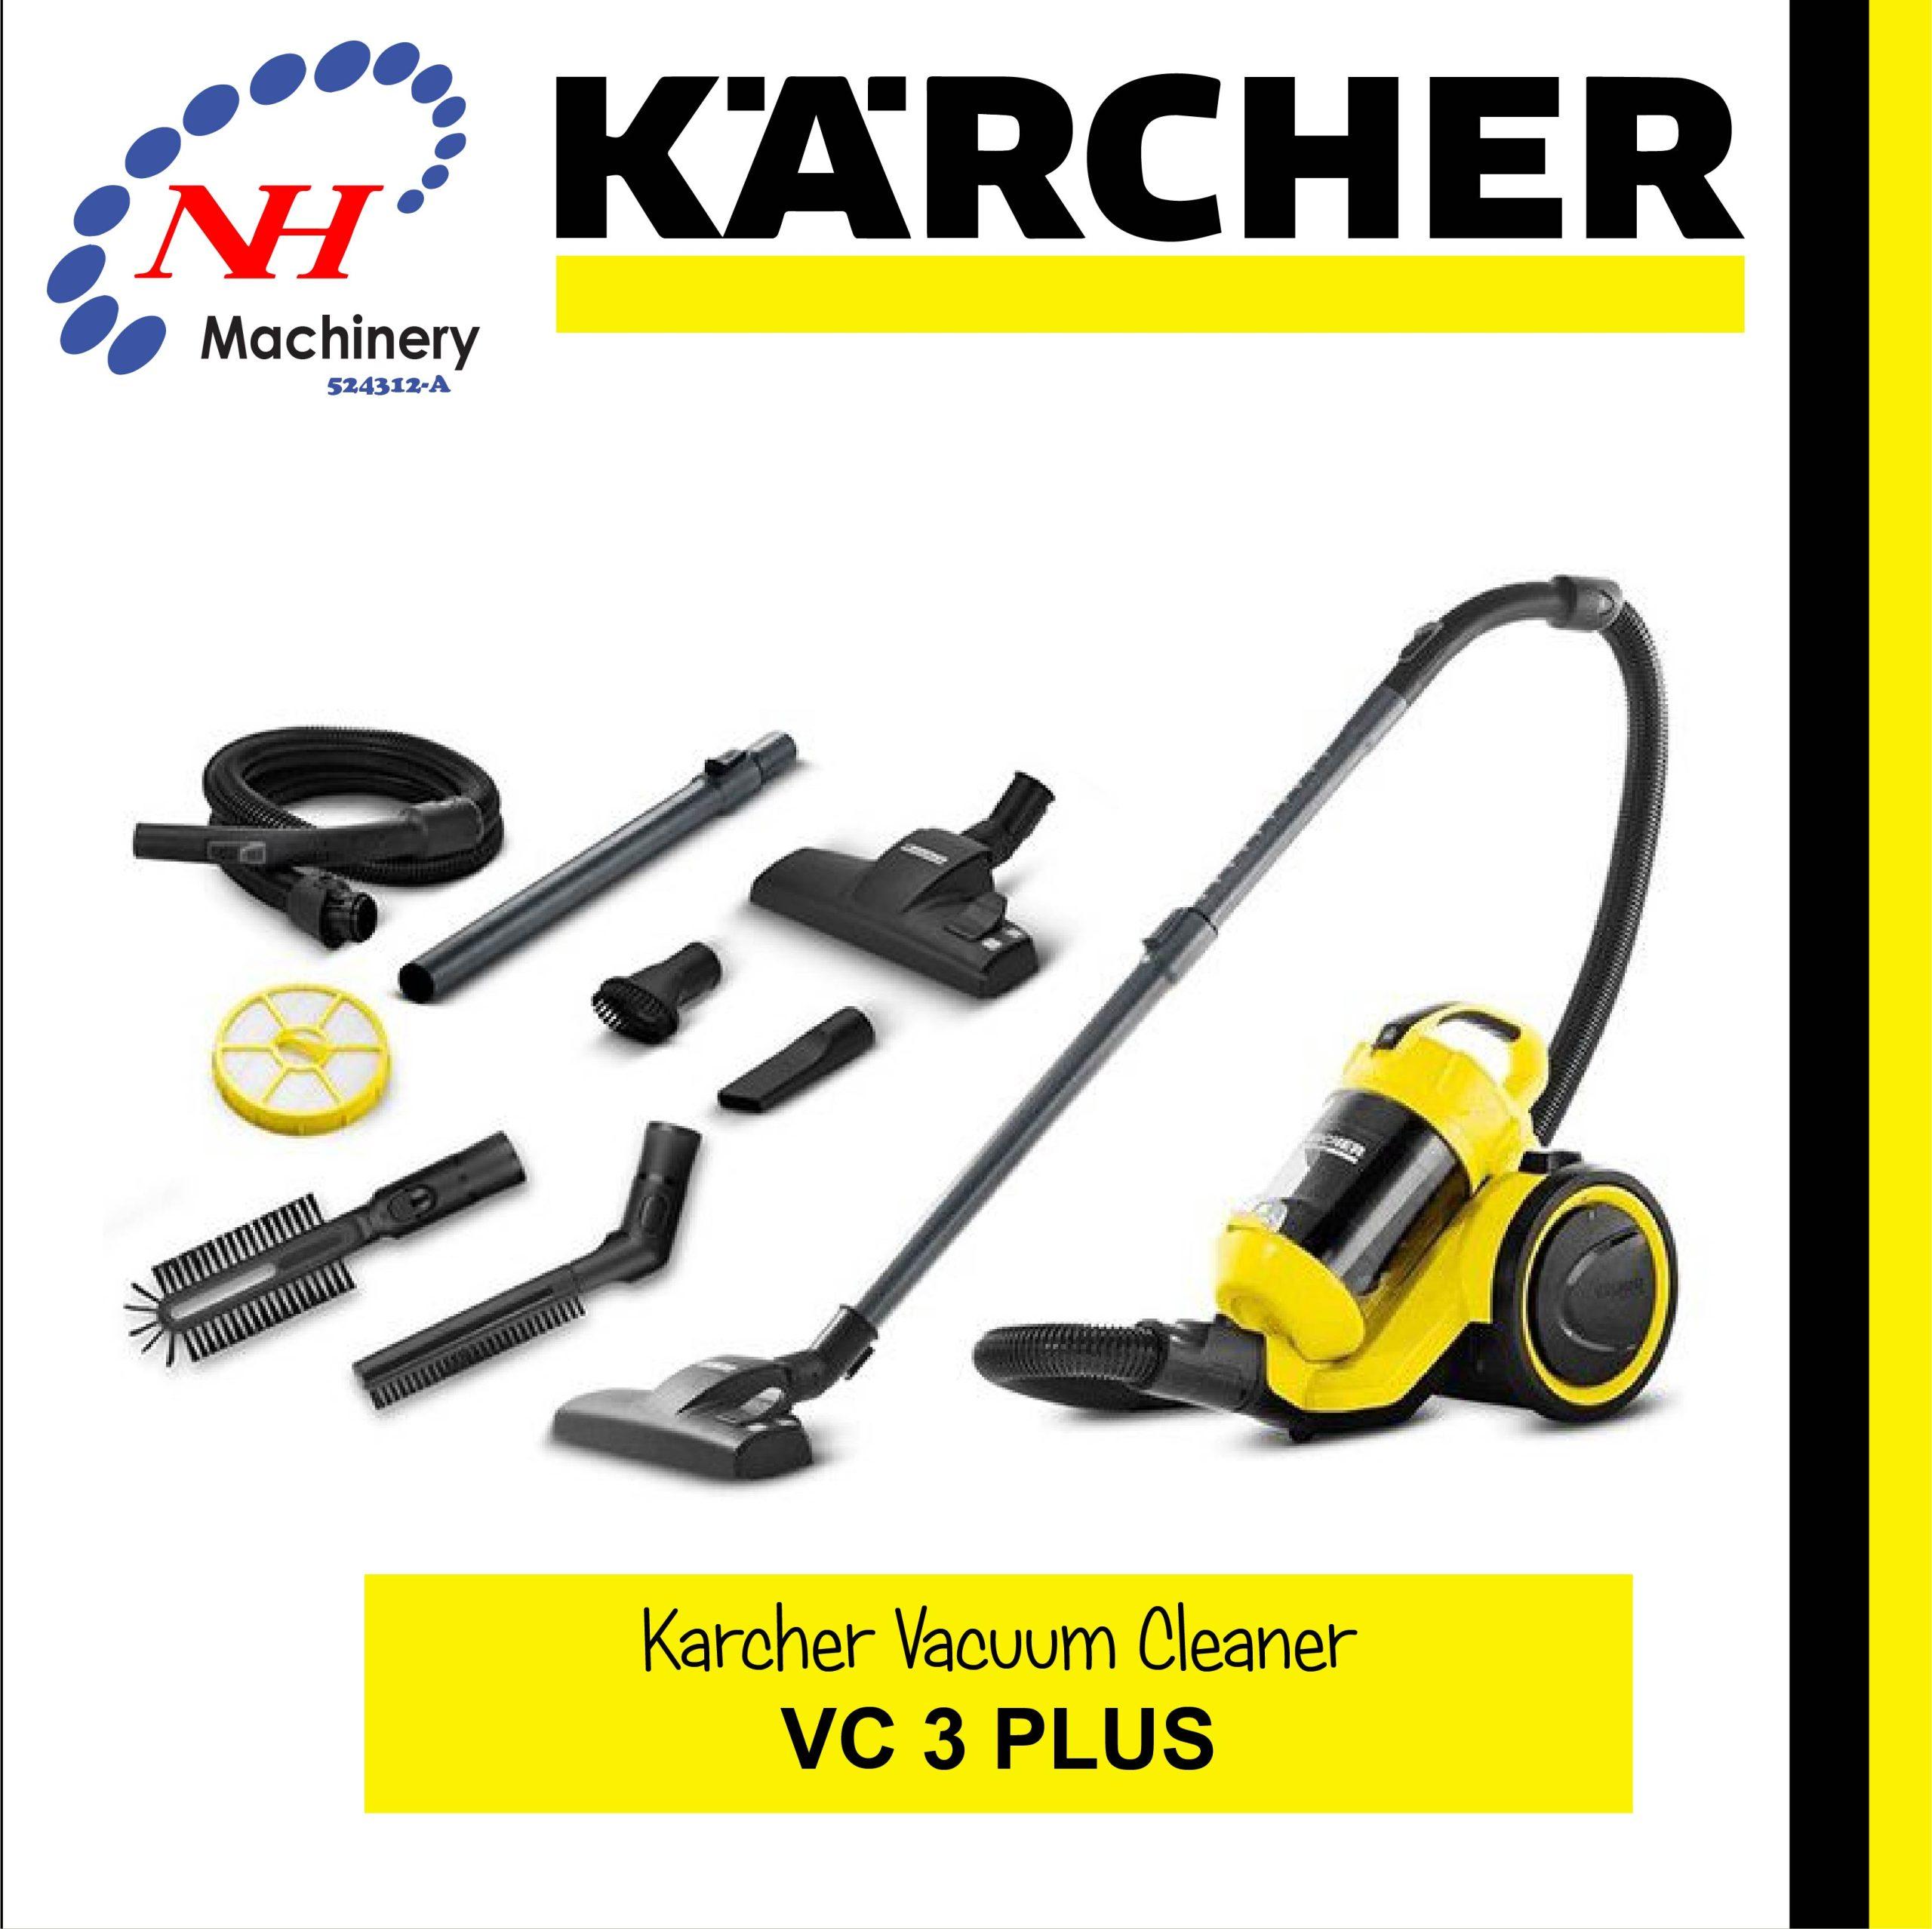 Aspiradora Karcher VC 3 Plus 700 W